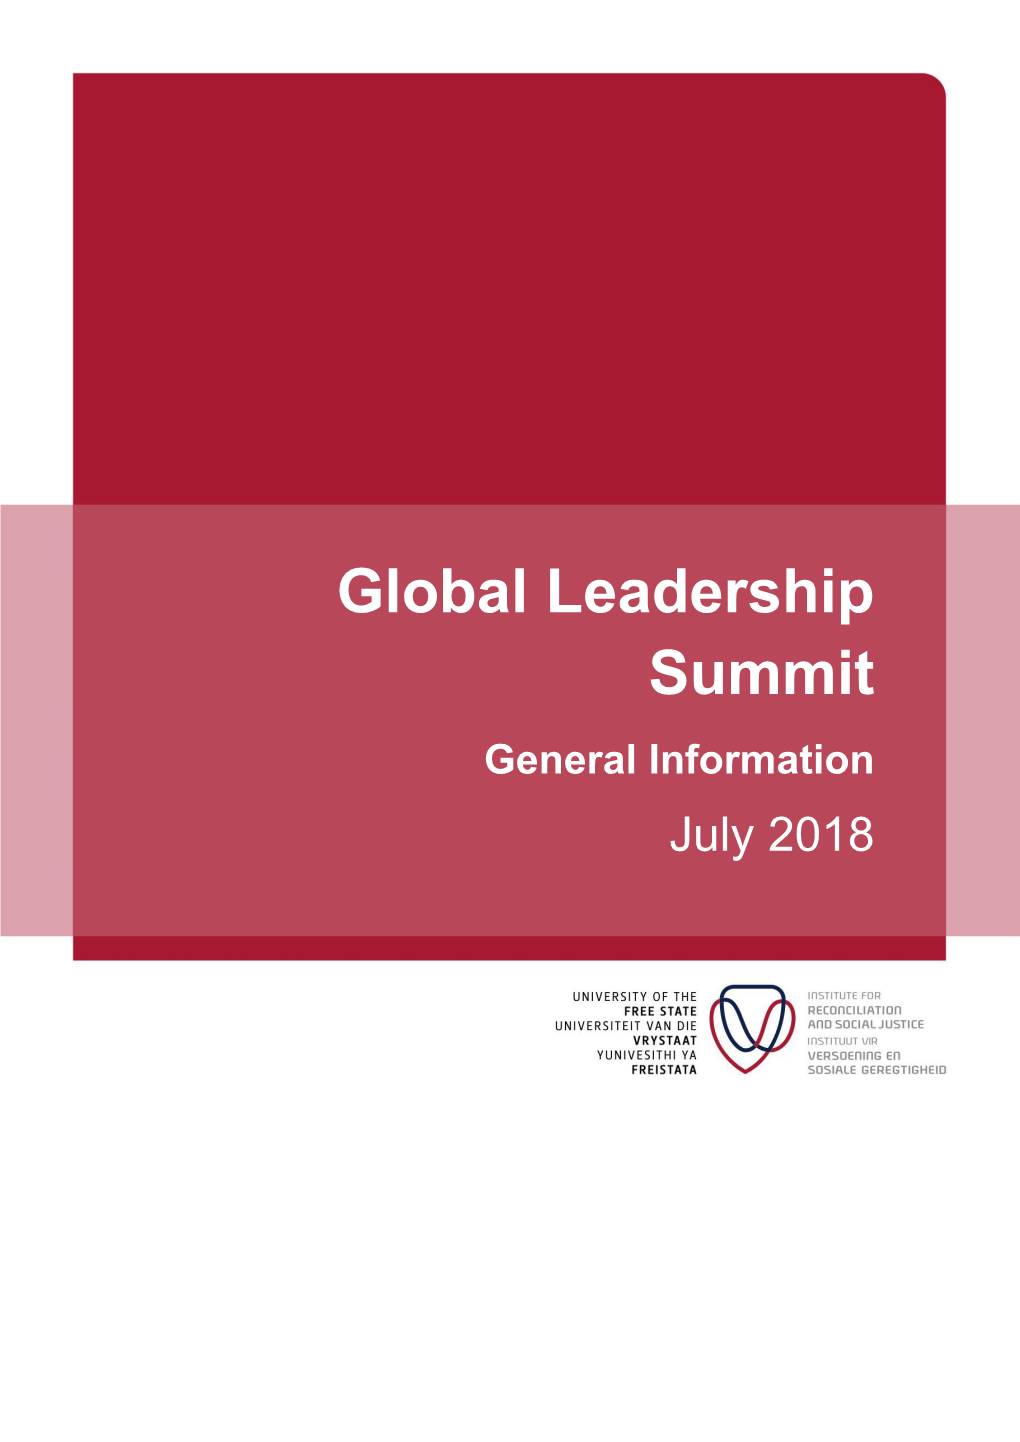 Global Leadership Summit General Information July 2018